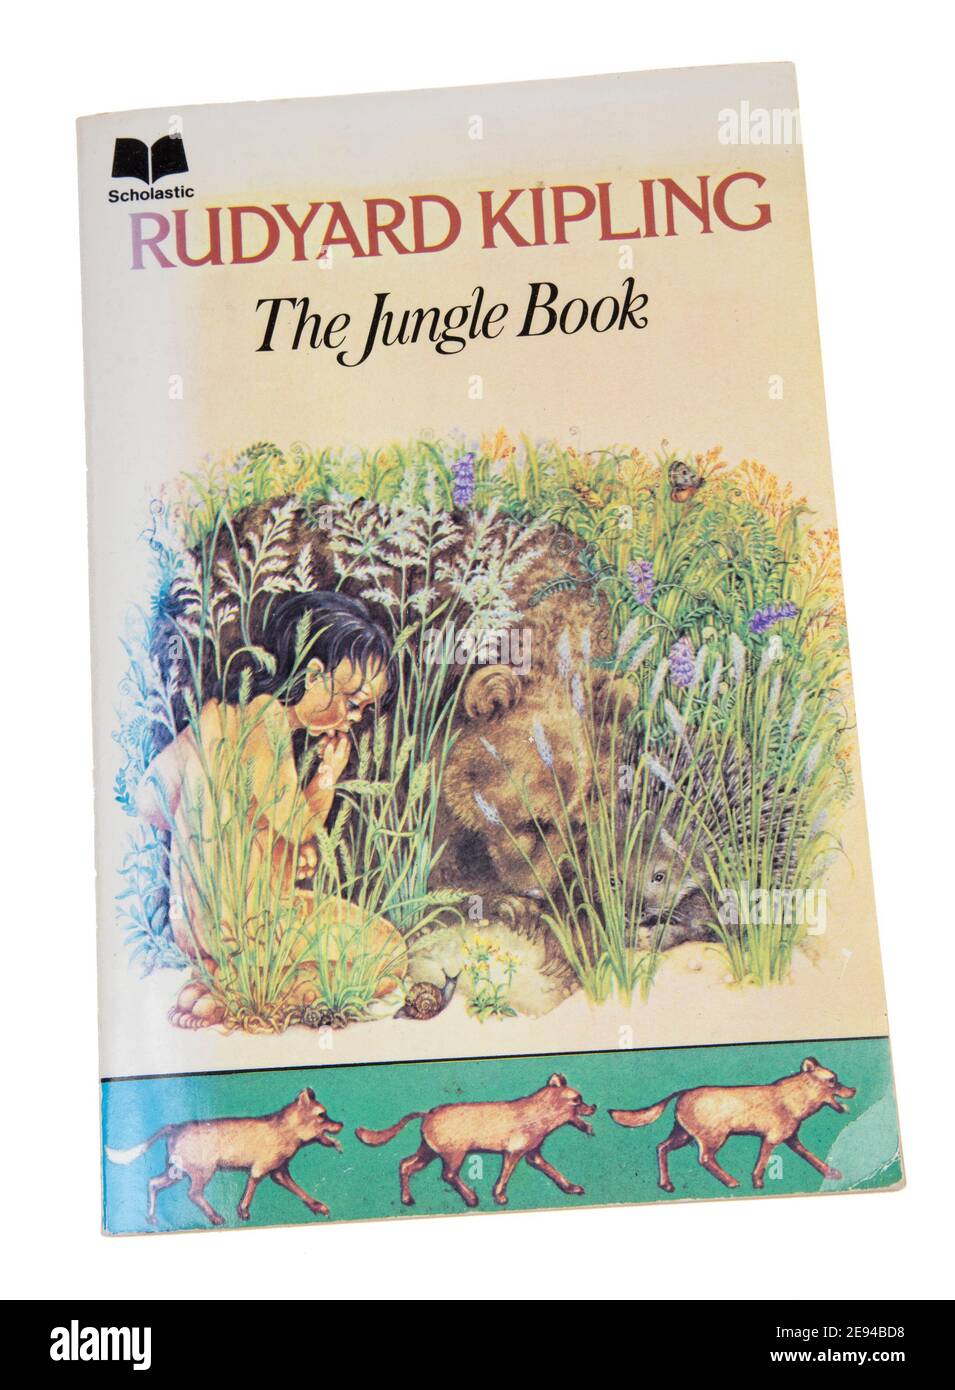 The Jungle Book de Rudyard Kipling un livre de poche avec une colonne vertébrale décolorée a été publiée en 1975 et publiée pour la première fois en 1894 Banque D'Images